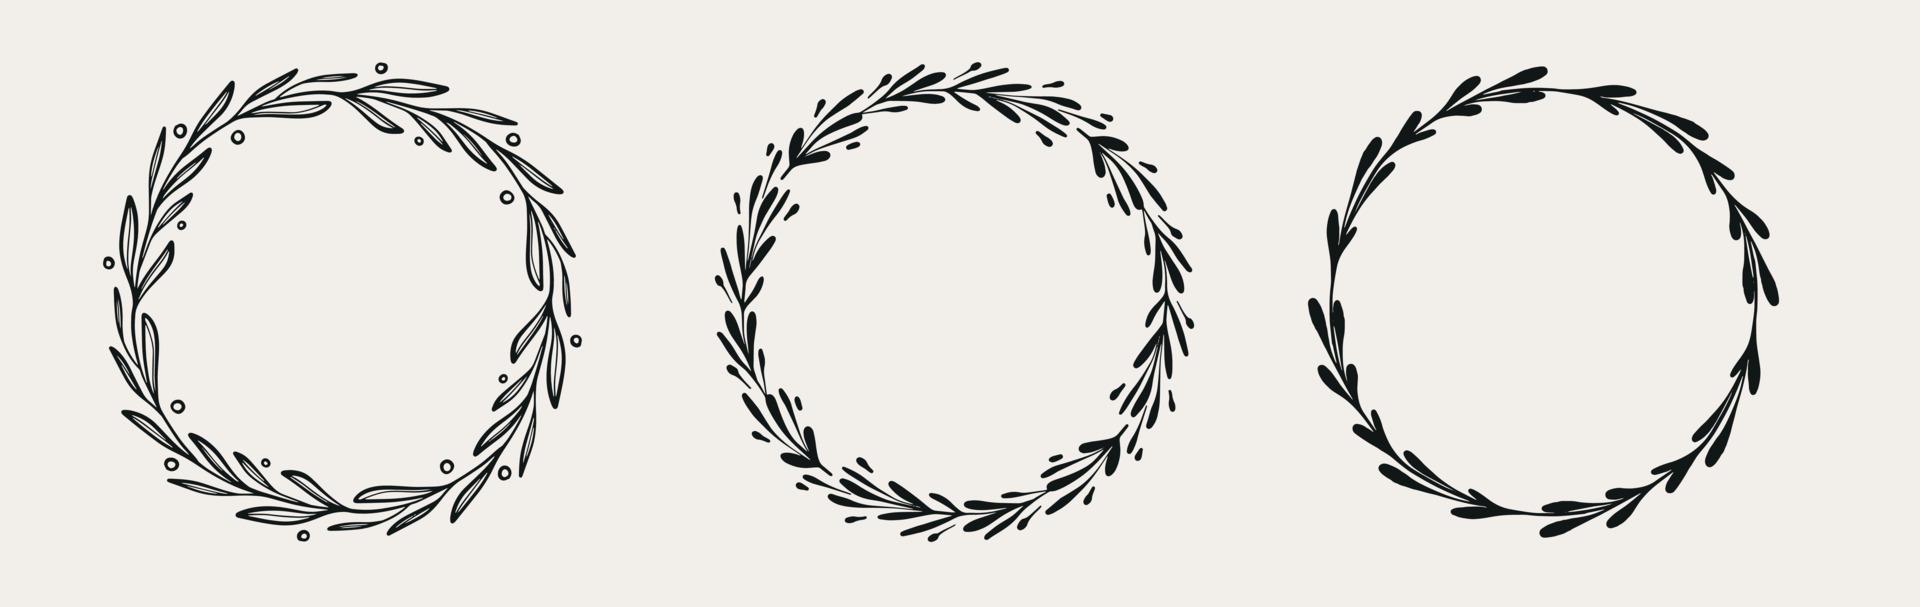 conjunto do Preto decorativo círculo floral quadro. vetor guirlanda com galhos, ervas, plantas, folhas